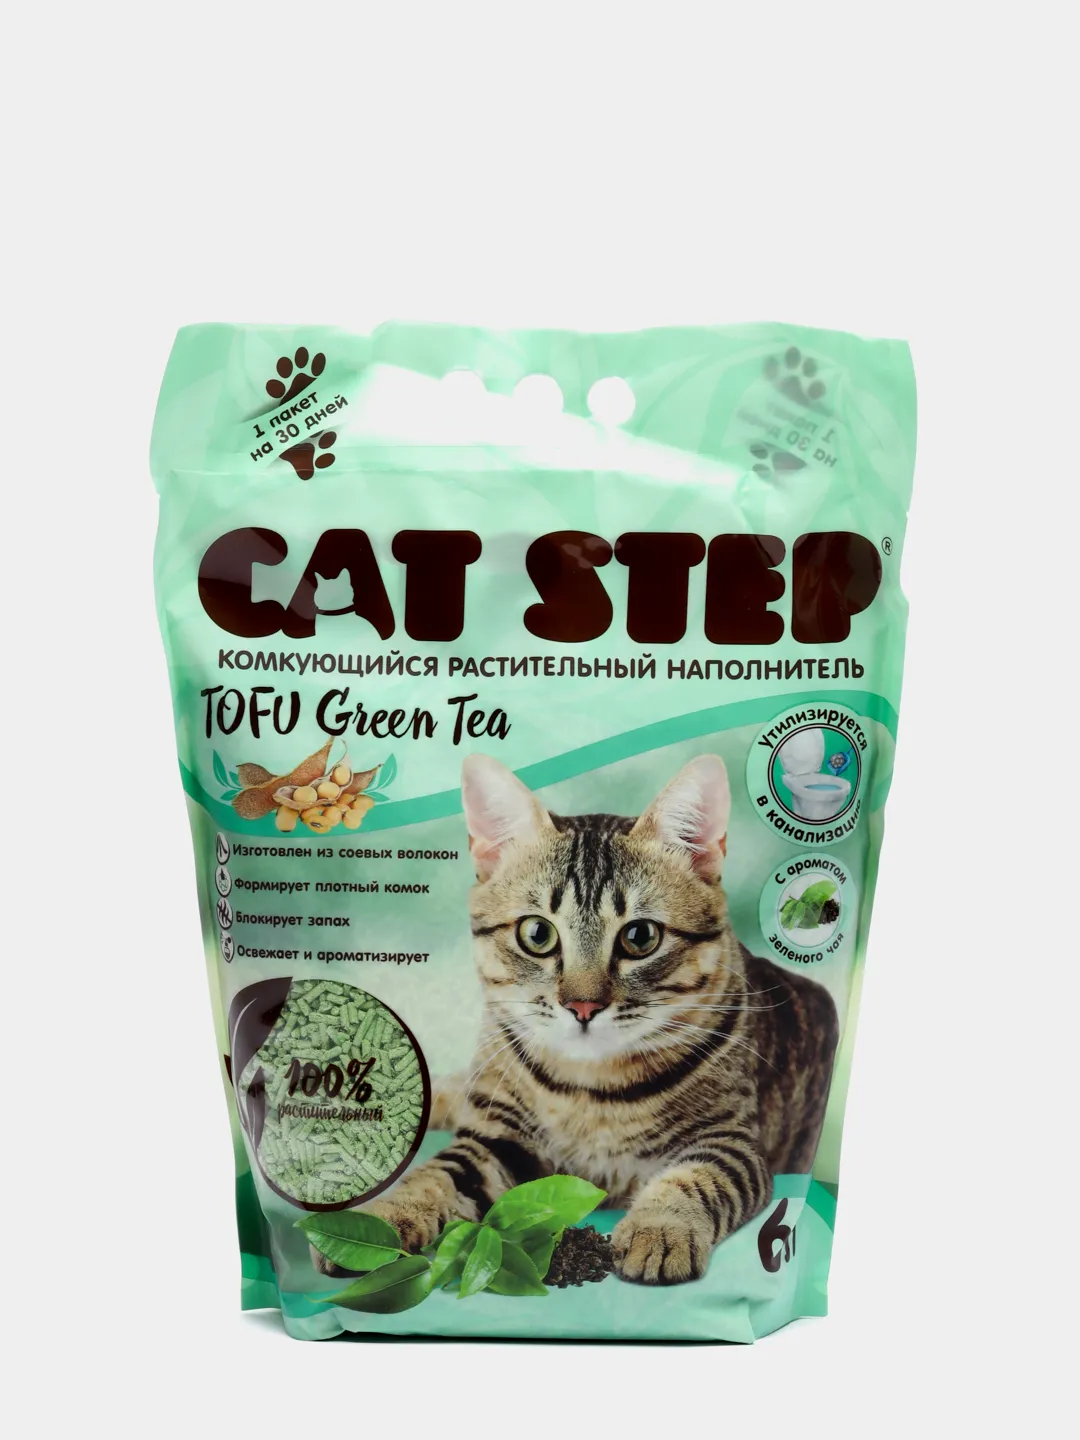 Cat Step Tofu 6 л. Cat Step наполнитель соевый. Cat Step наполнитель Tofu Green Tea комкующийся 4л. Наполнитель для кошачьего соевый тофу Green Tea Cat Step. Наполнитель cat step tofu